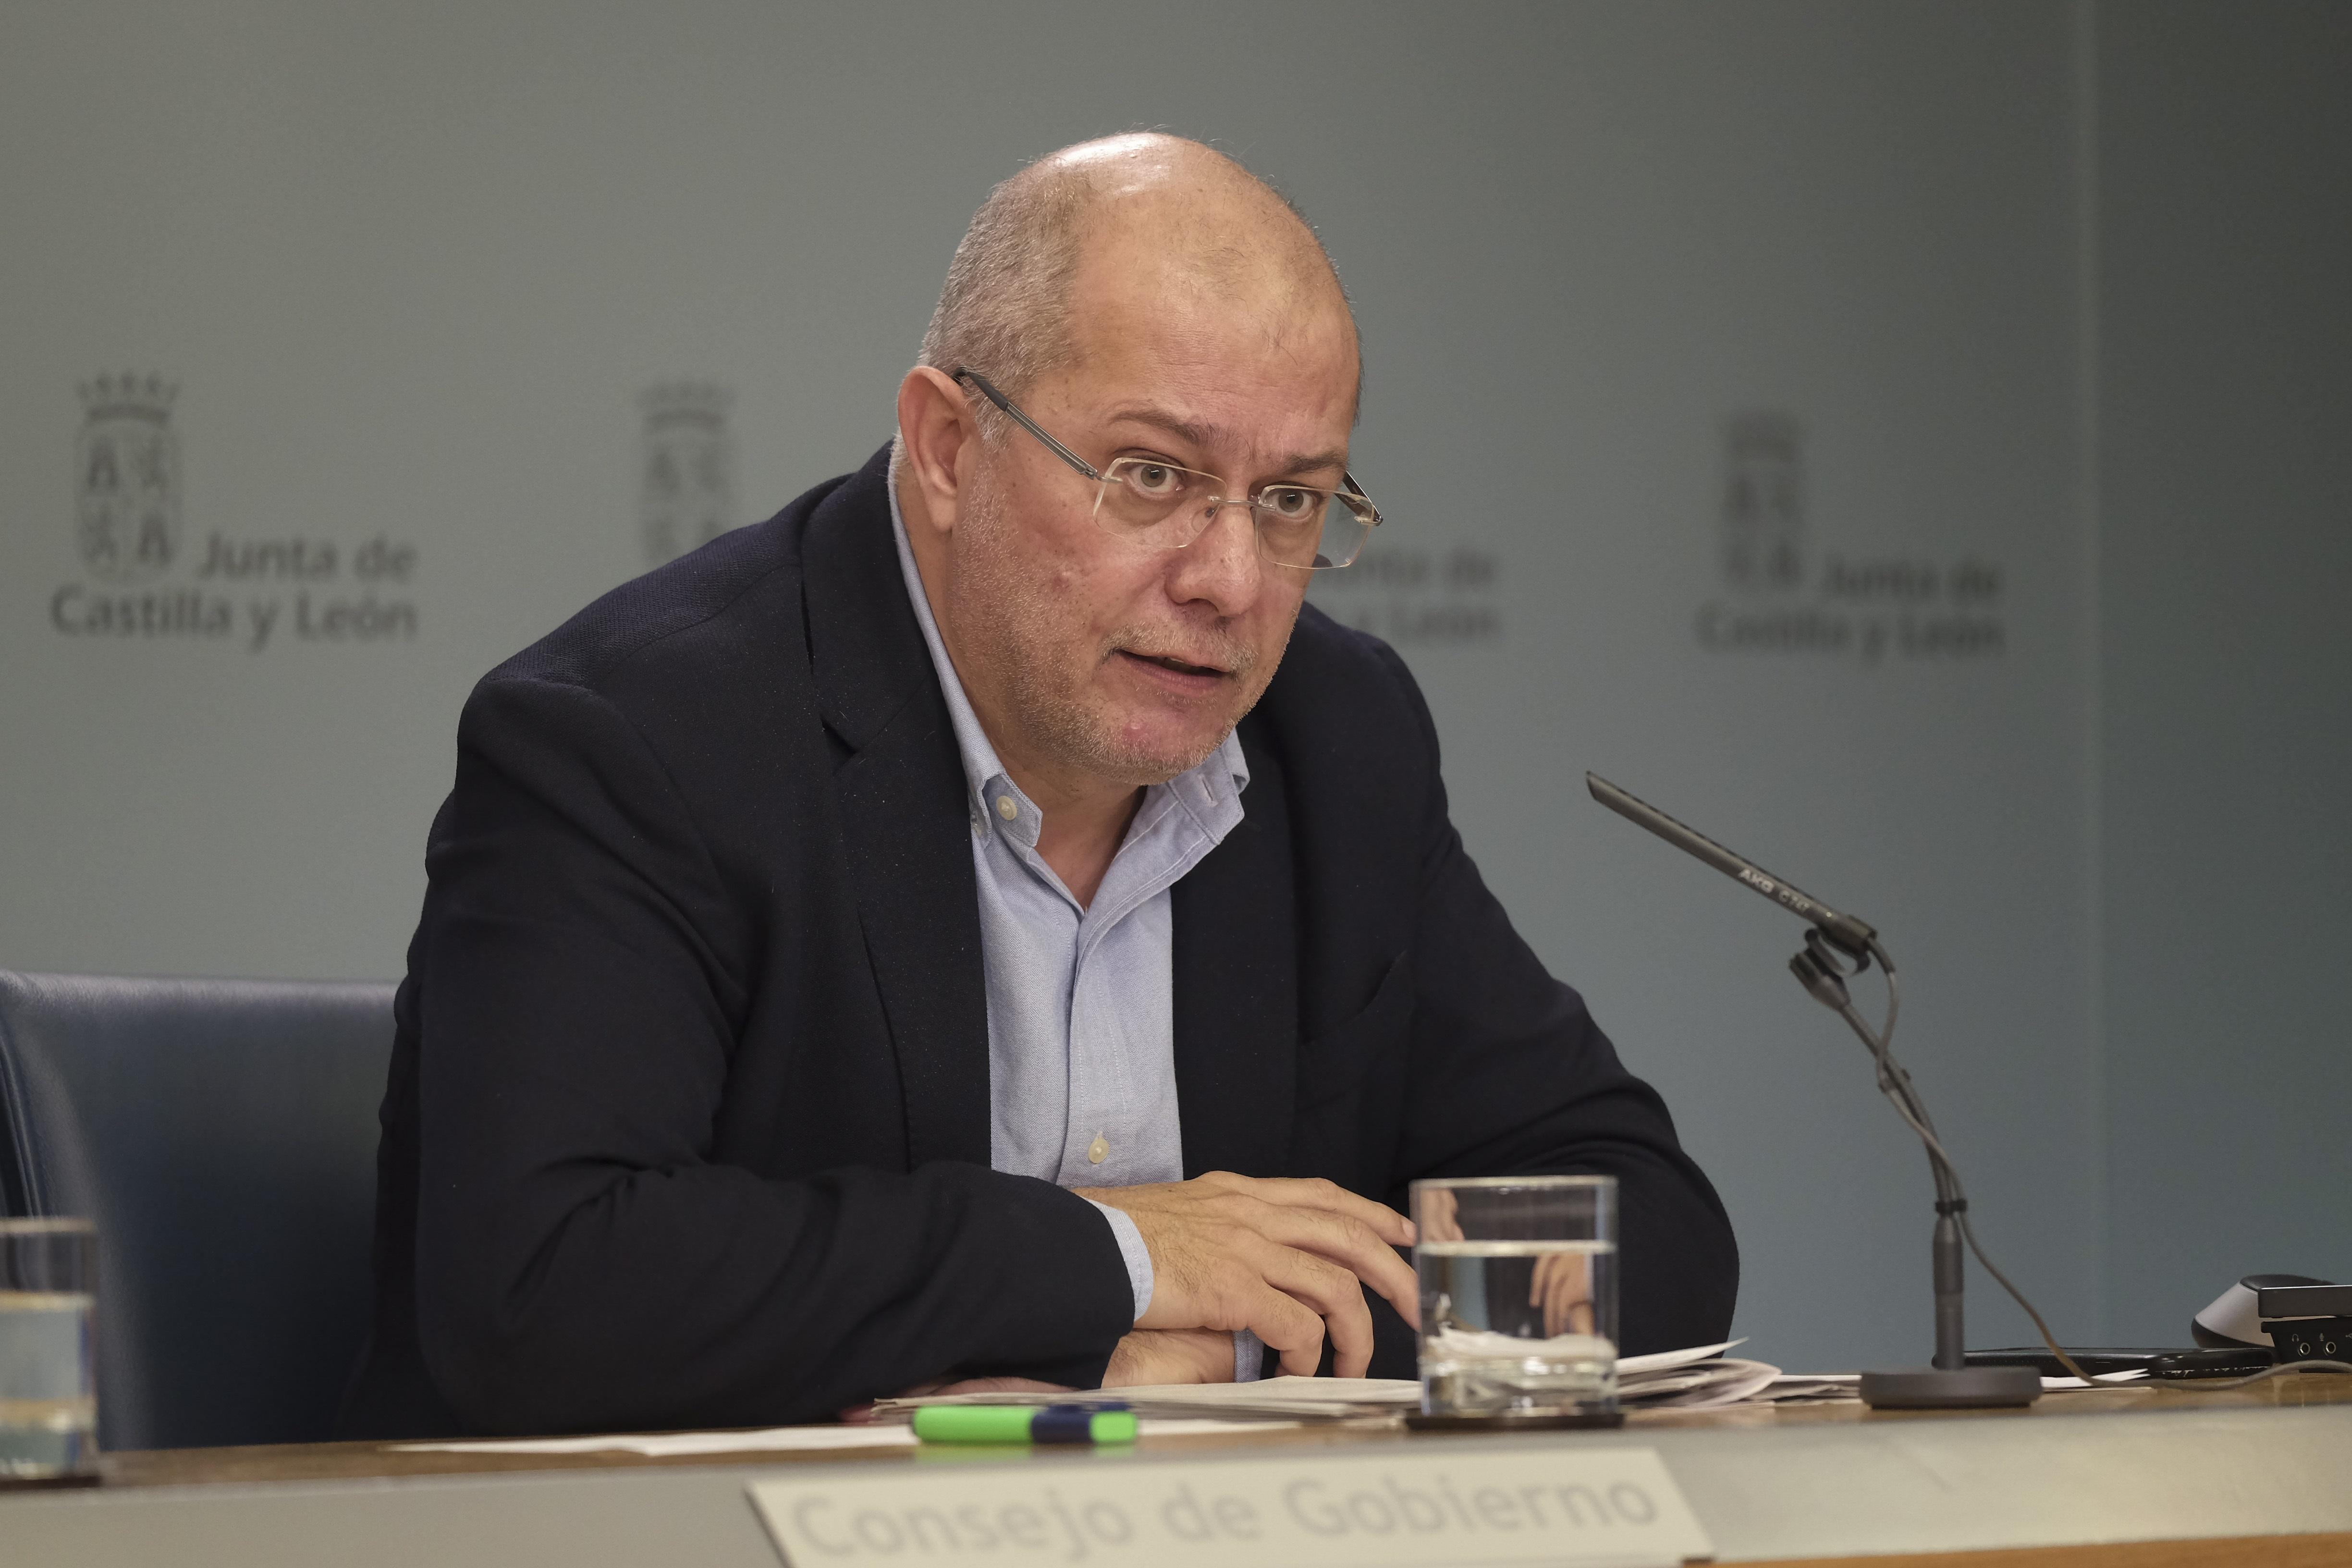 Francisco Igea, portavoz en Castilla y León, anuncia supensión de clases en Miranda de Ebro, Pancorbo y Treviño